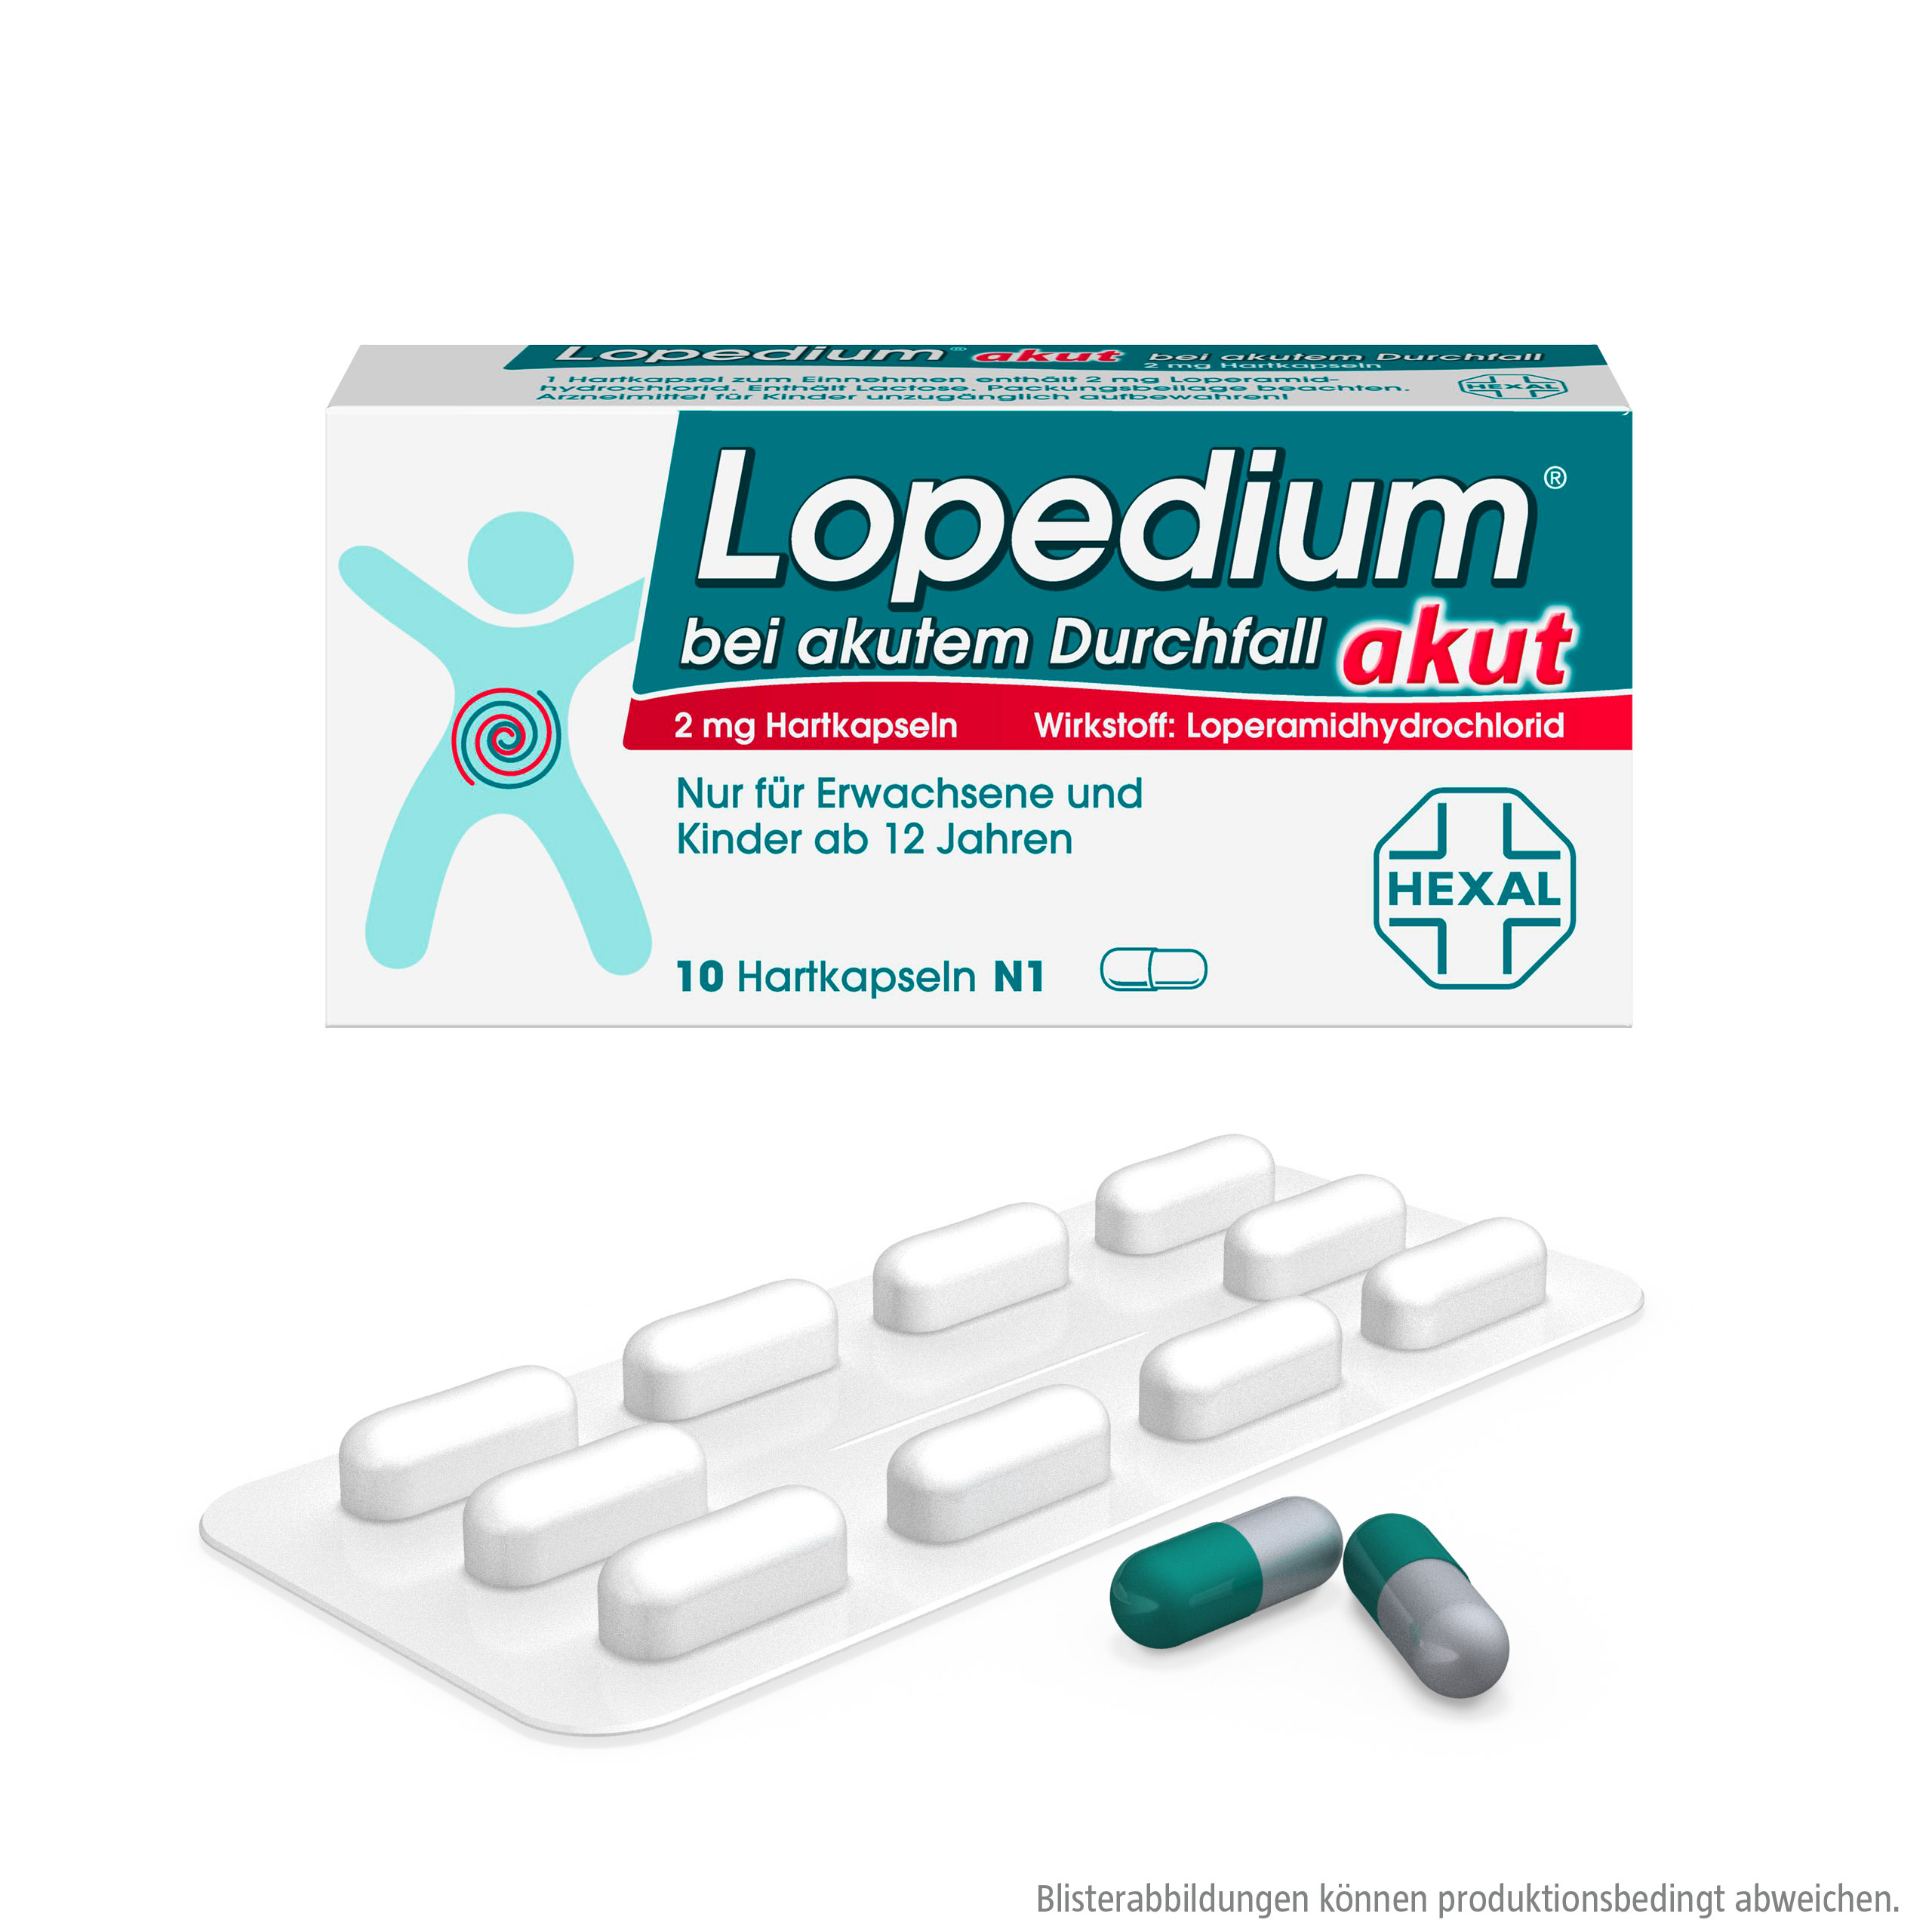 Lopedium akut bei akutem Durchfall Hartkapseln (10 Stk)